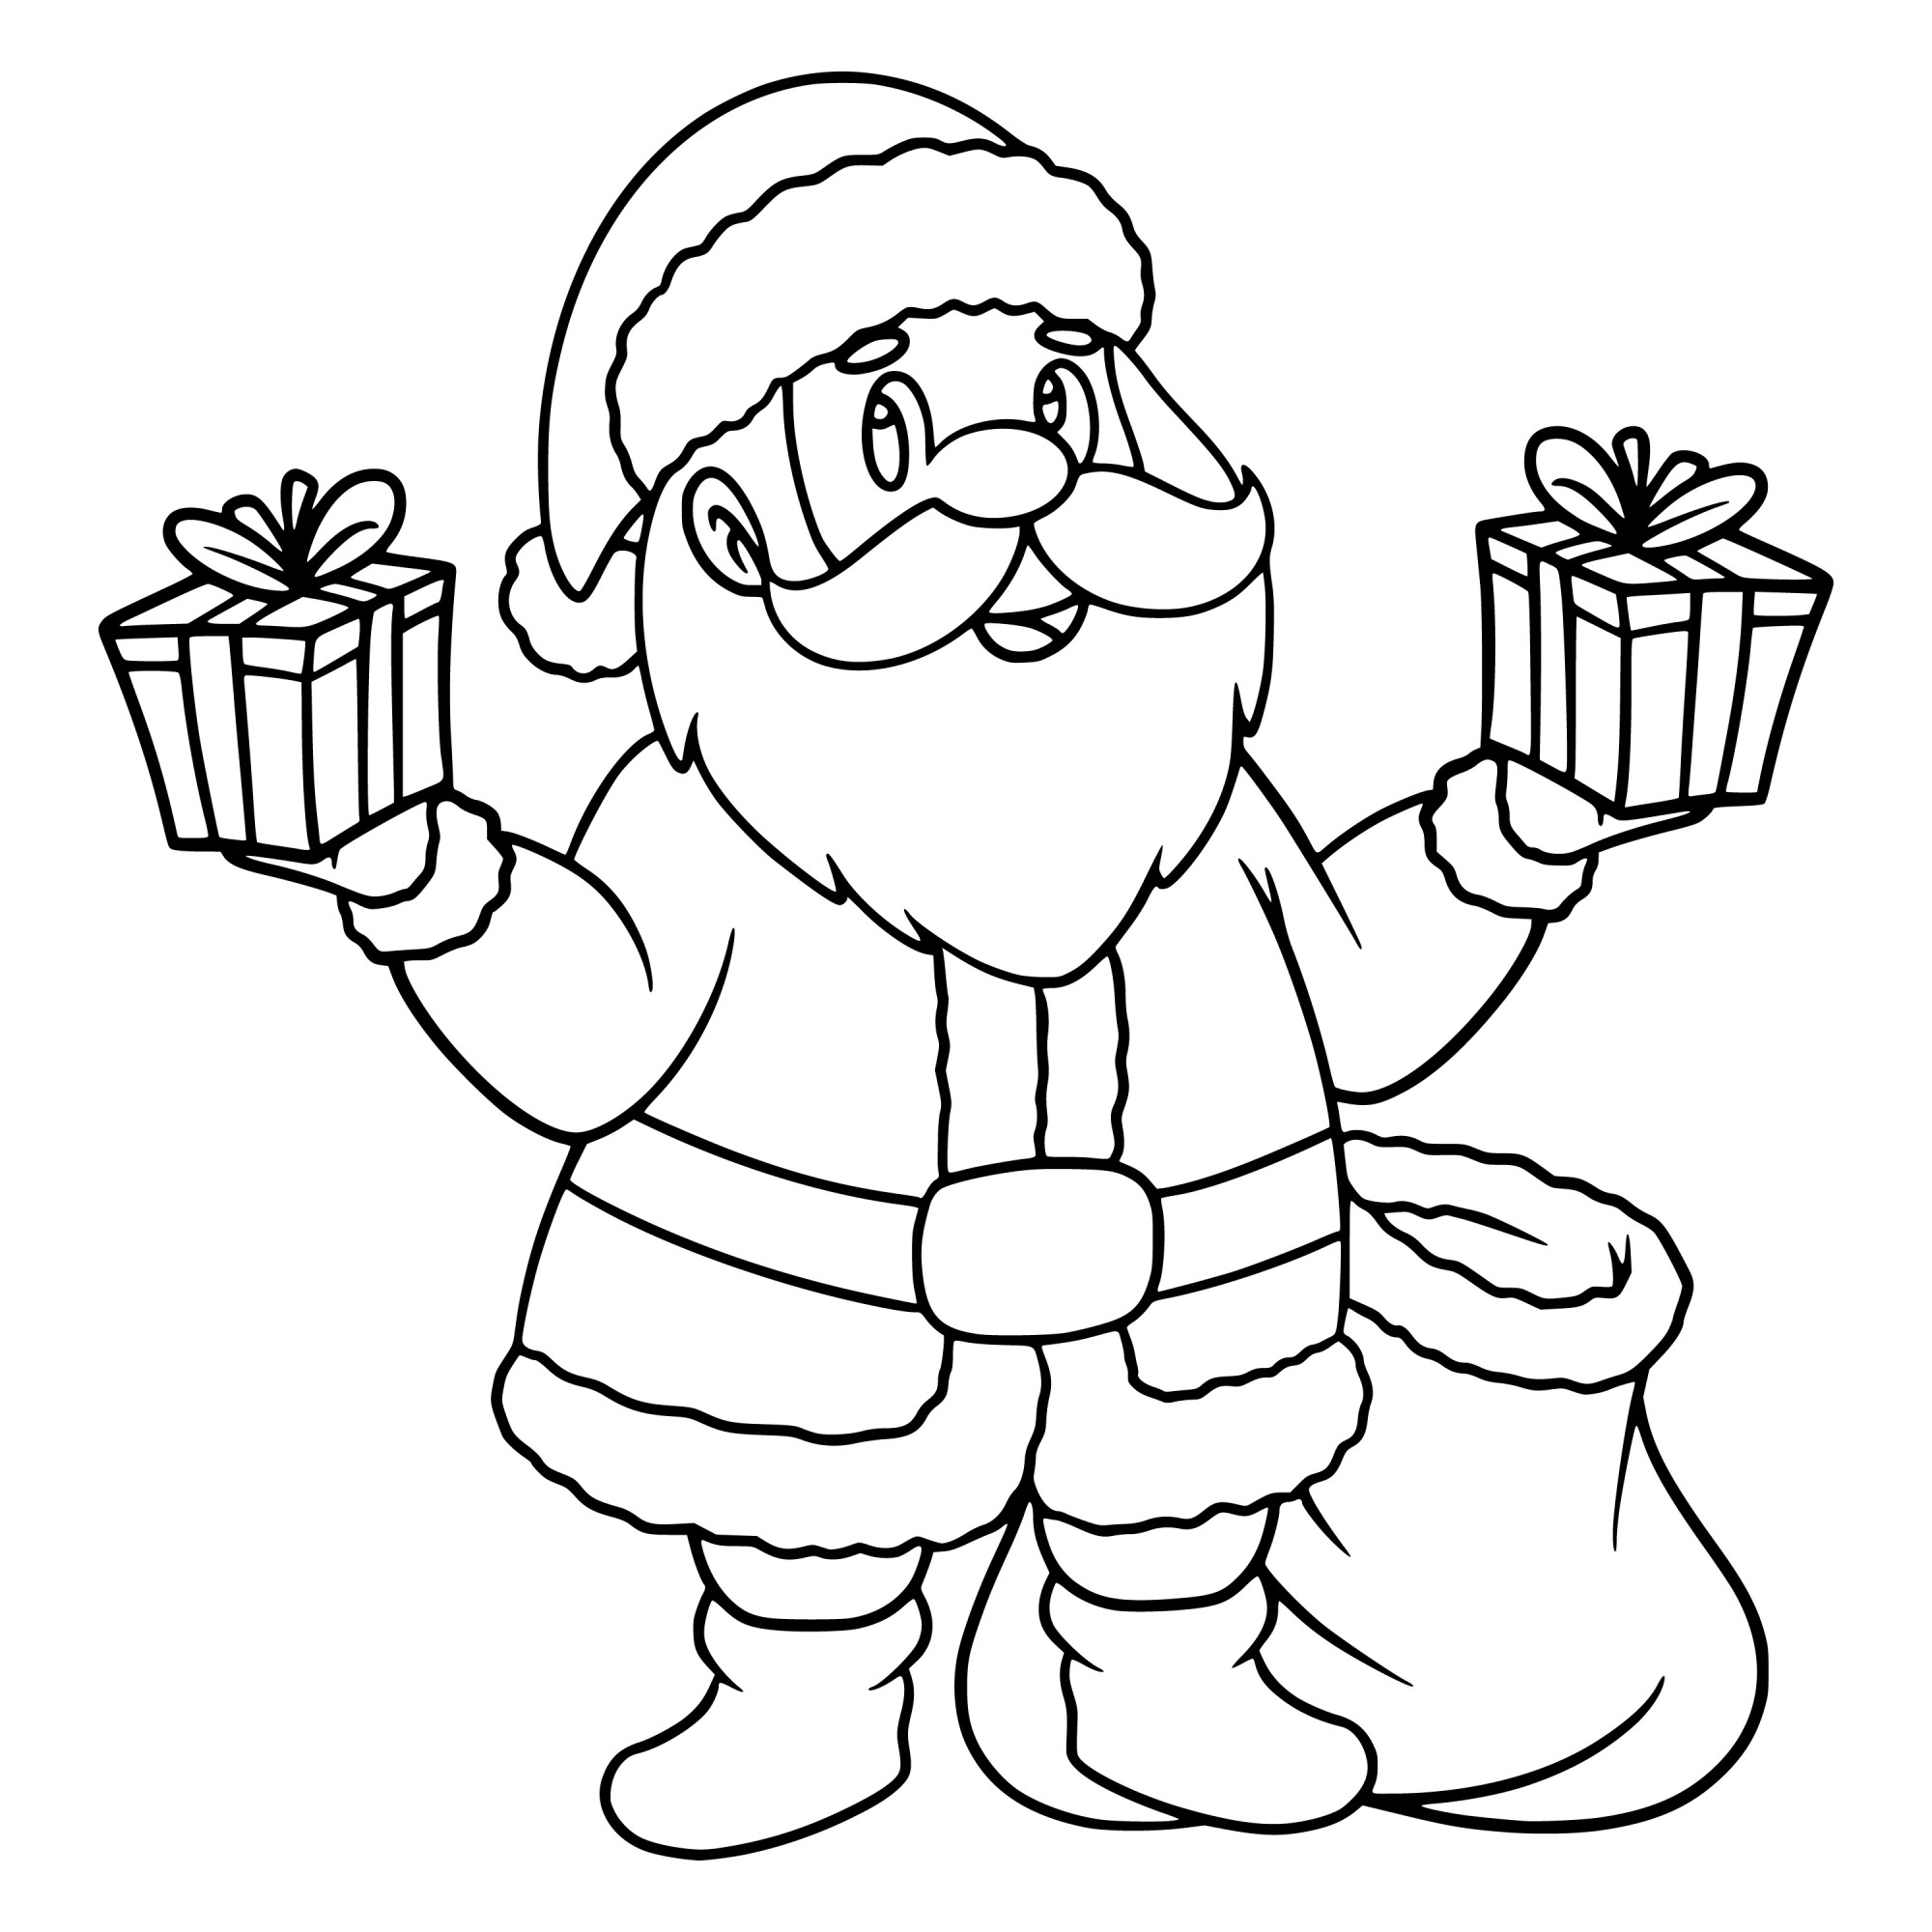 Раскраска для детей: веселый дед мороз с подарками в руках